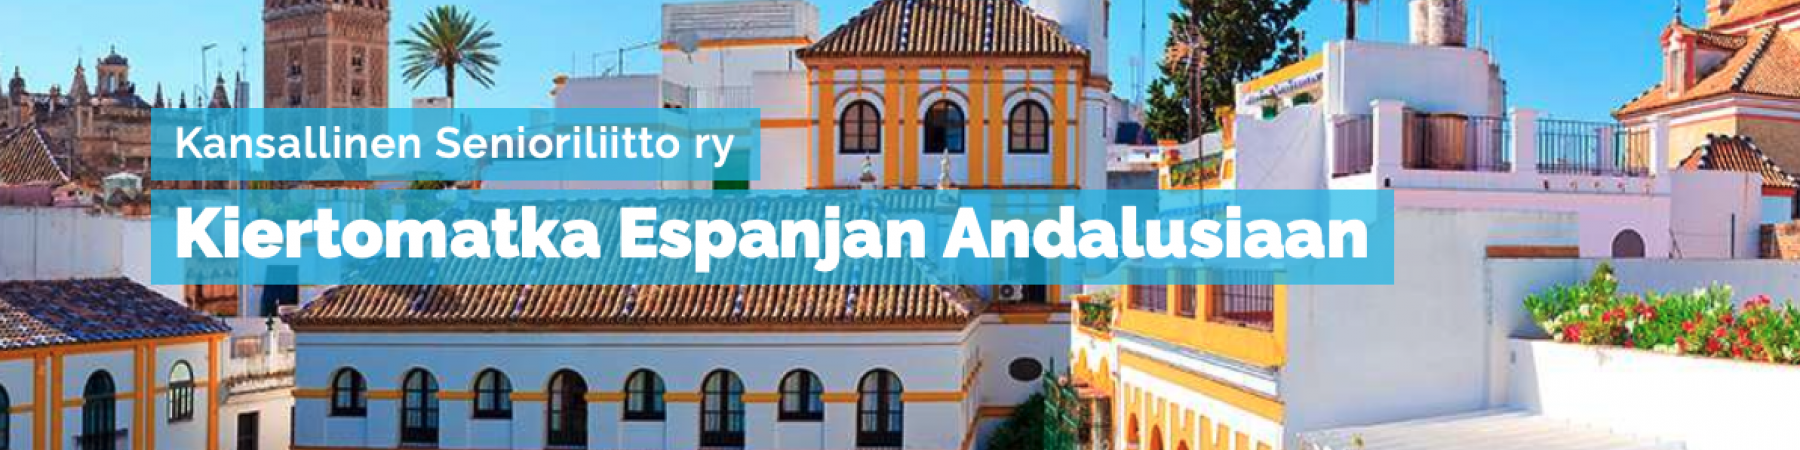 Uusi jäsenmatka myynnissä: Andalusian kiertomatka keväällä 2023!